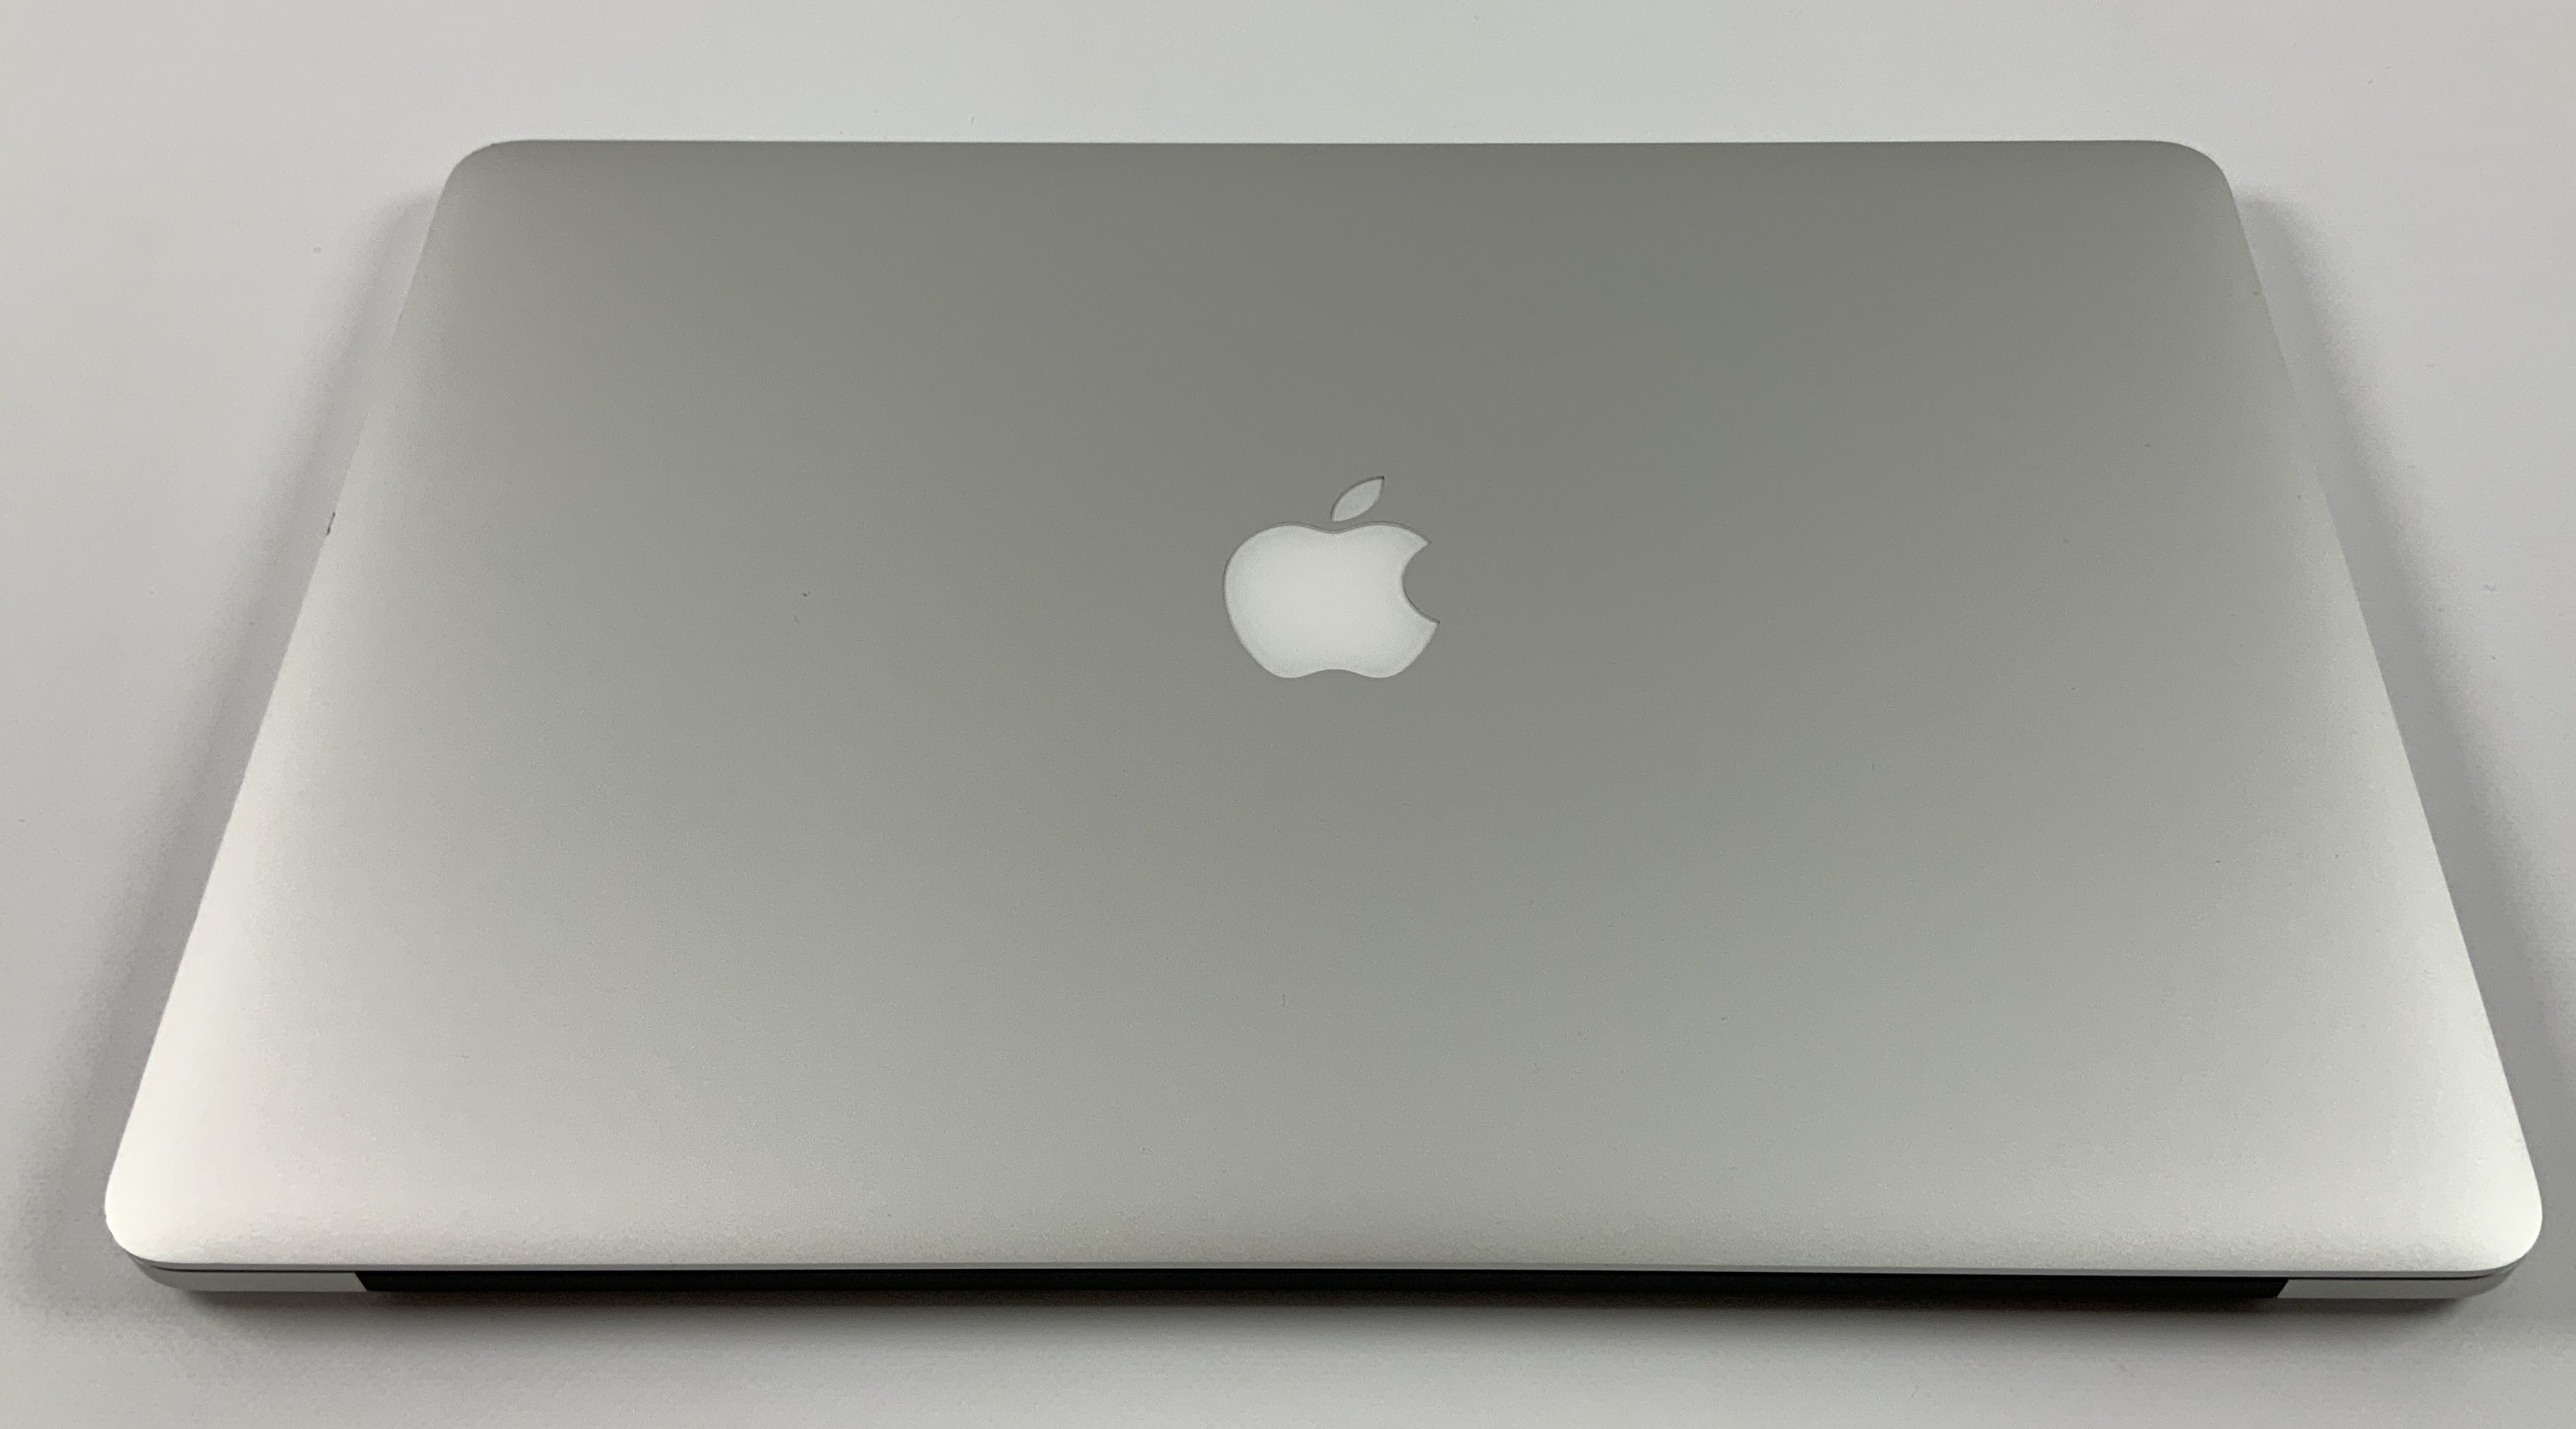 MacBook Pro Retina 15" Mid 2015 (Intel Quad-Core i7 2.2 GHz 16 GB RAM 256 GB SSD), Intel Quad-Core i7 2.2 GHz, 16 GB RAM, 256 GB SSD, imagen 2